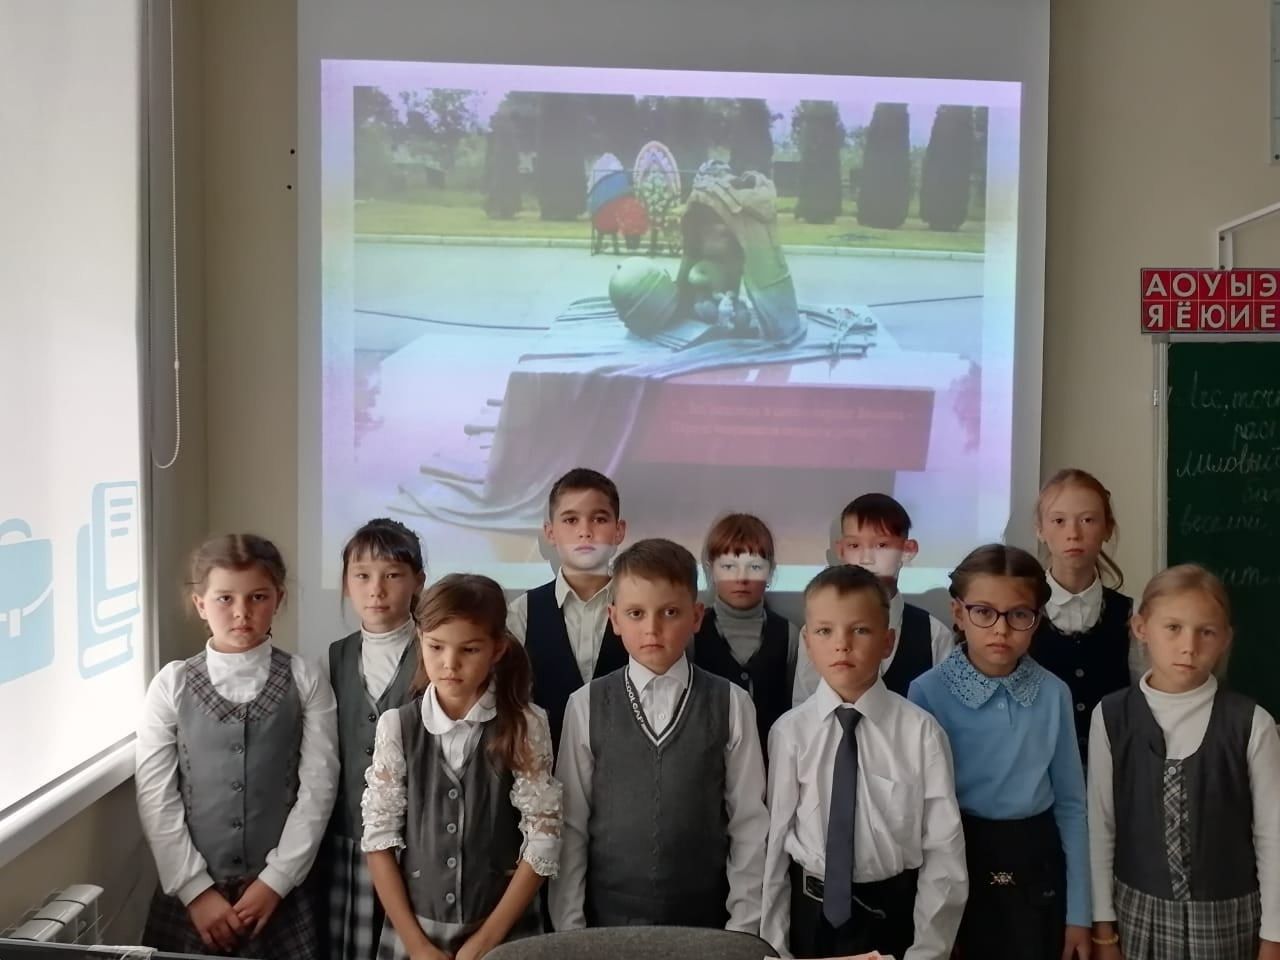 Табар-Черкийская школа присоединилась к Дню солидарности в борьбе с терроризмом